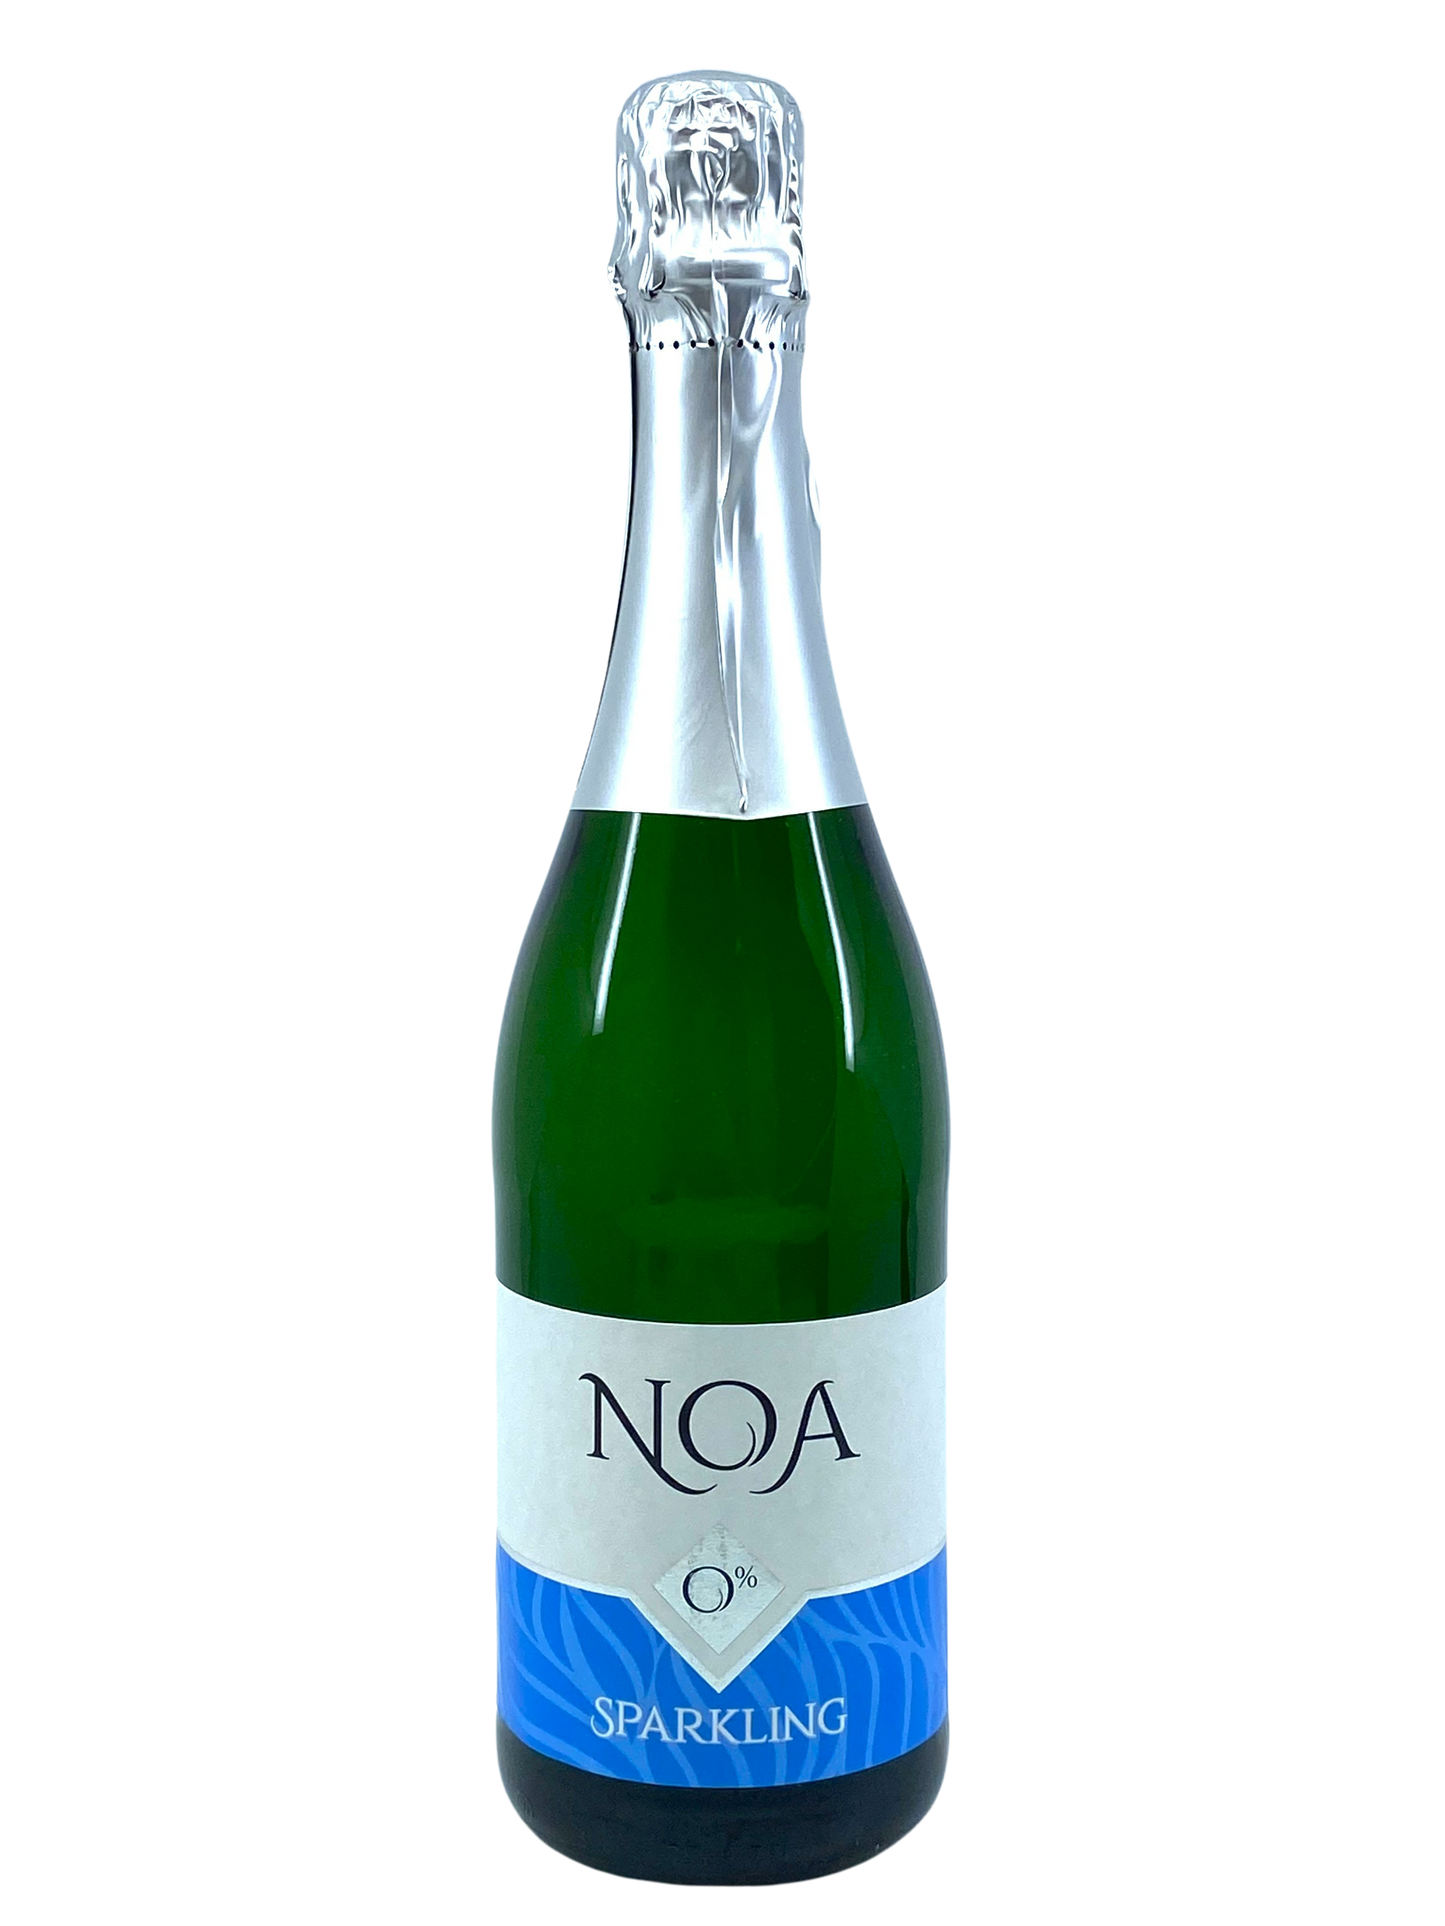 NOA 0% - Sparkling White